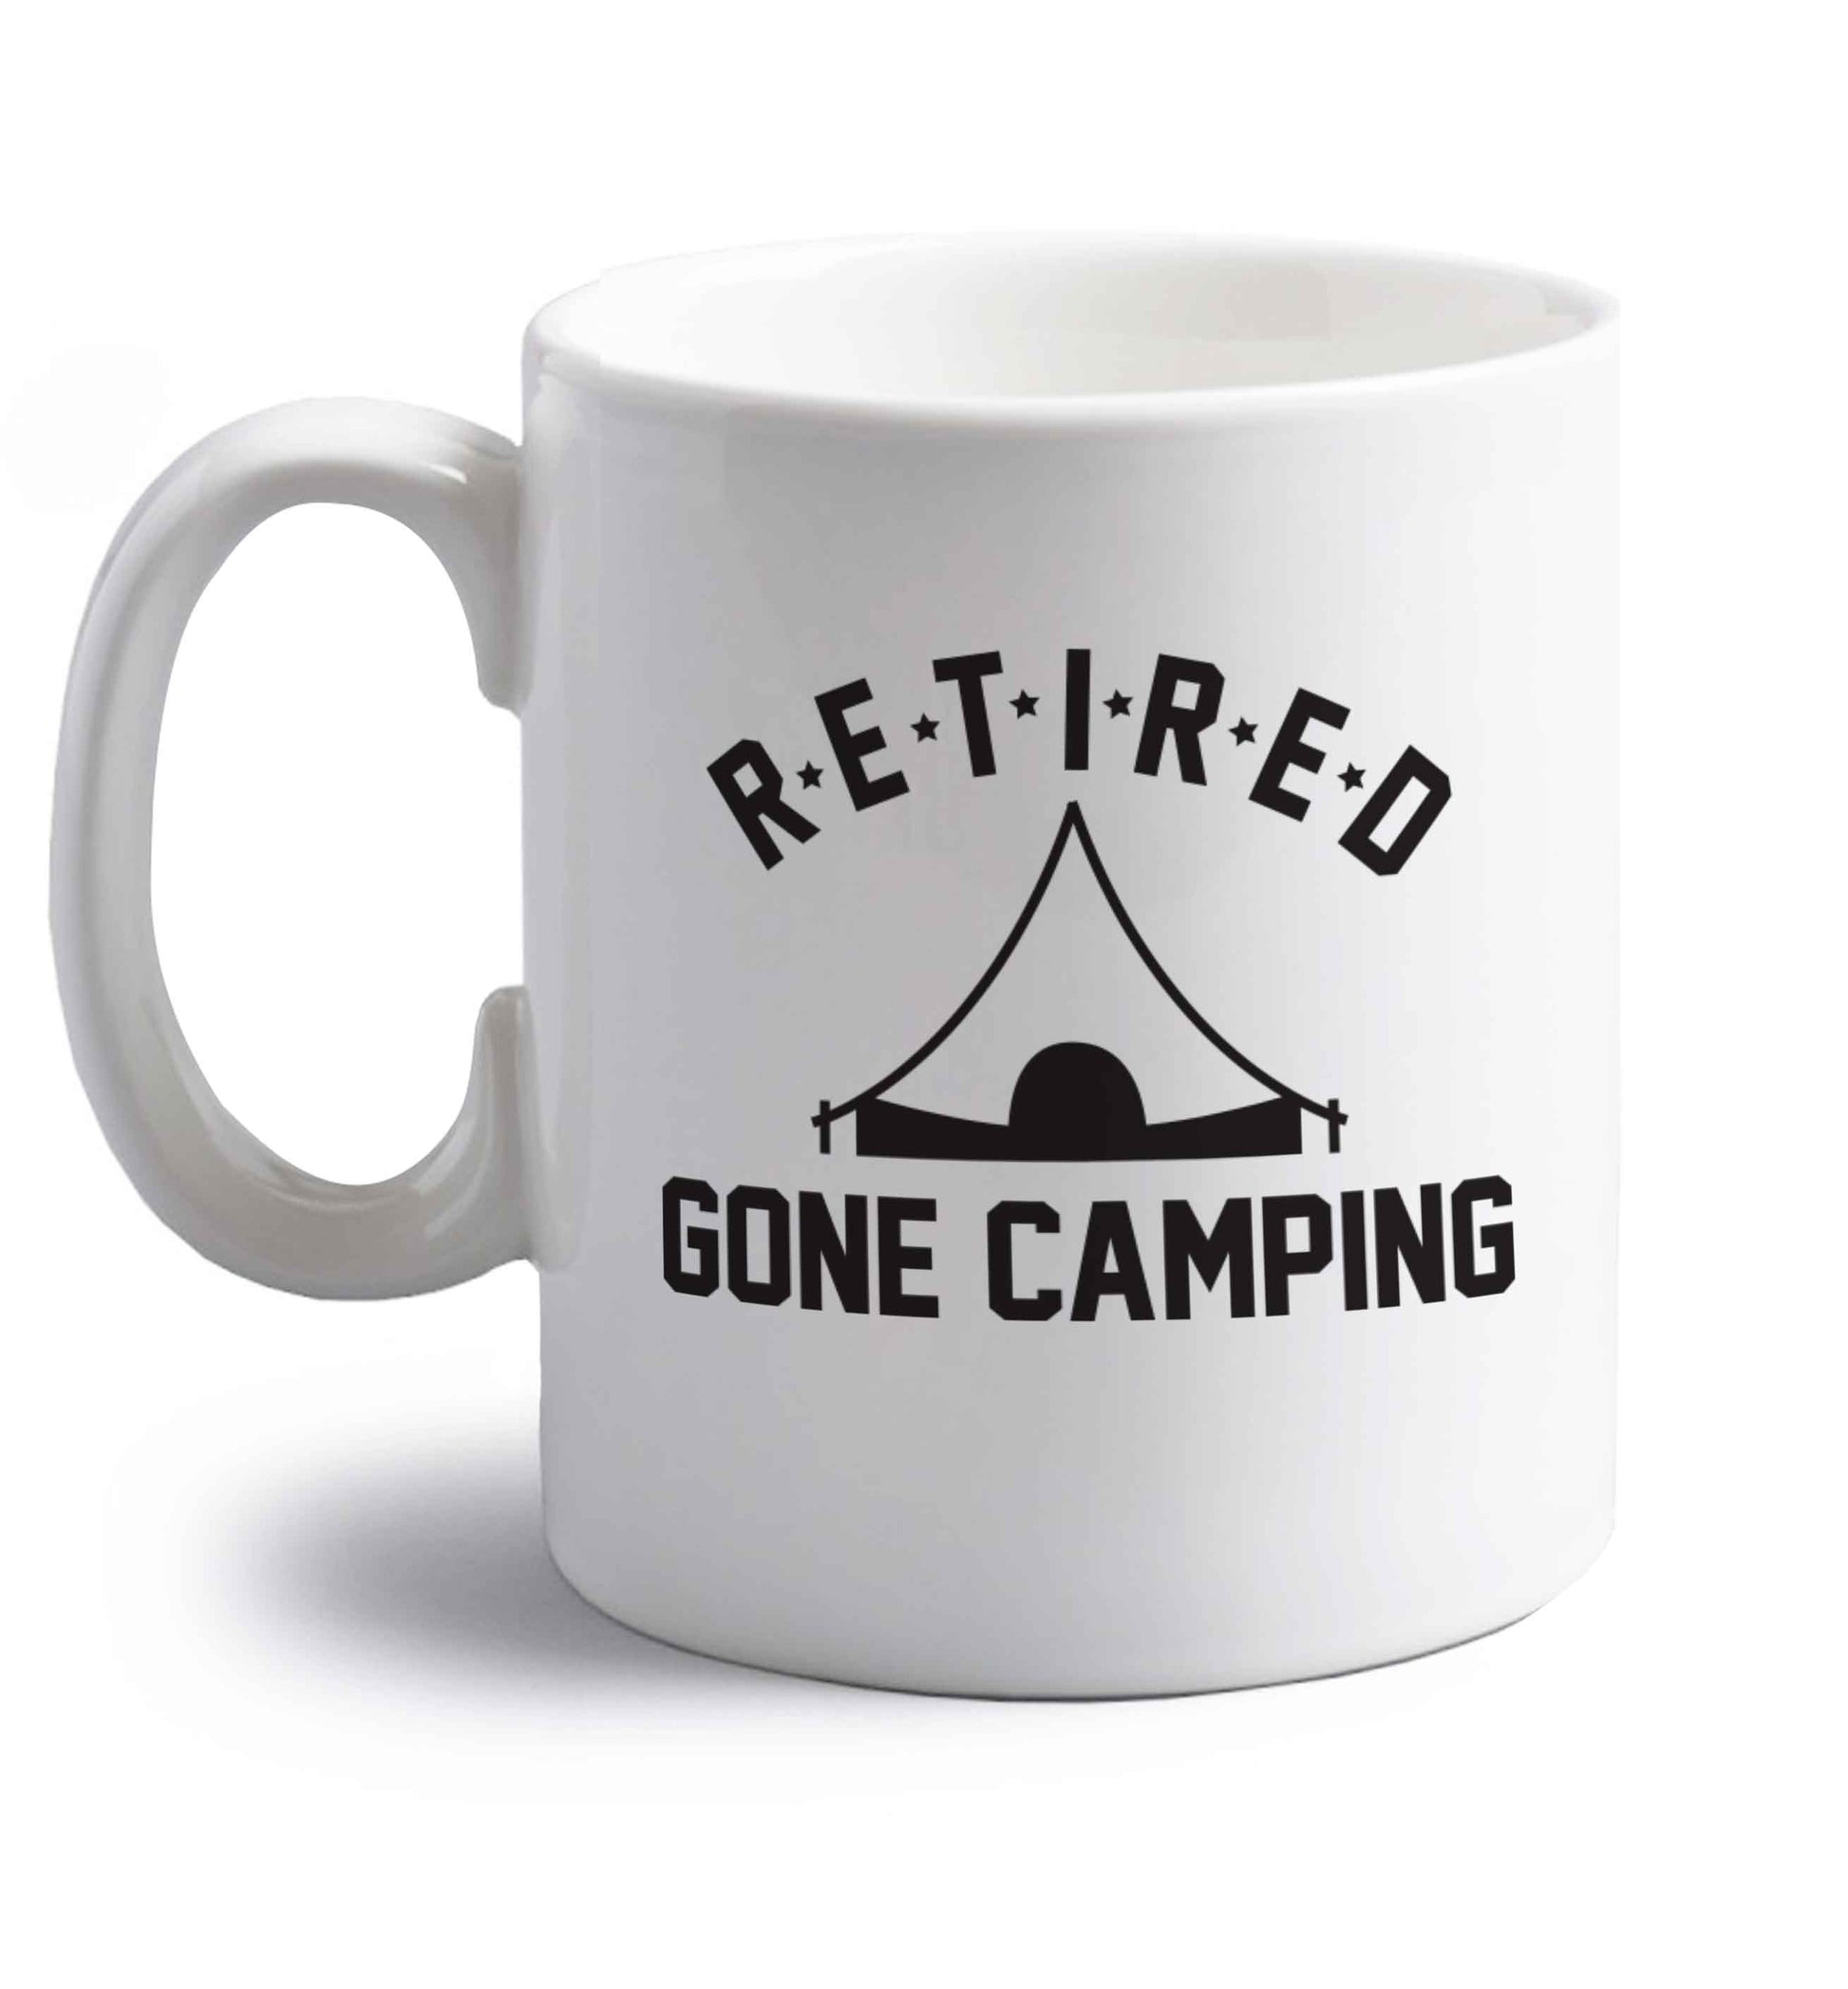 Retired gone camping right handed white ceramic mug 